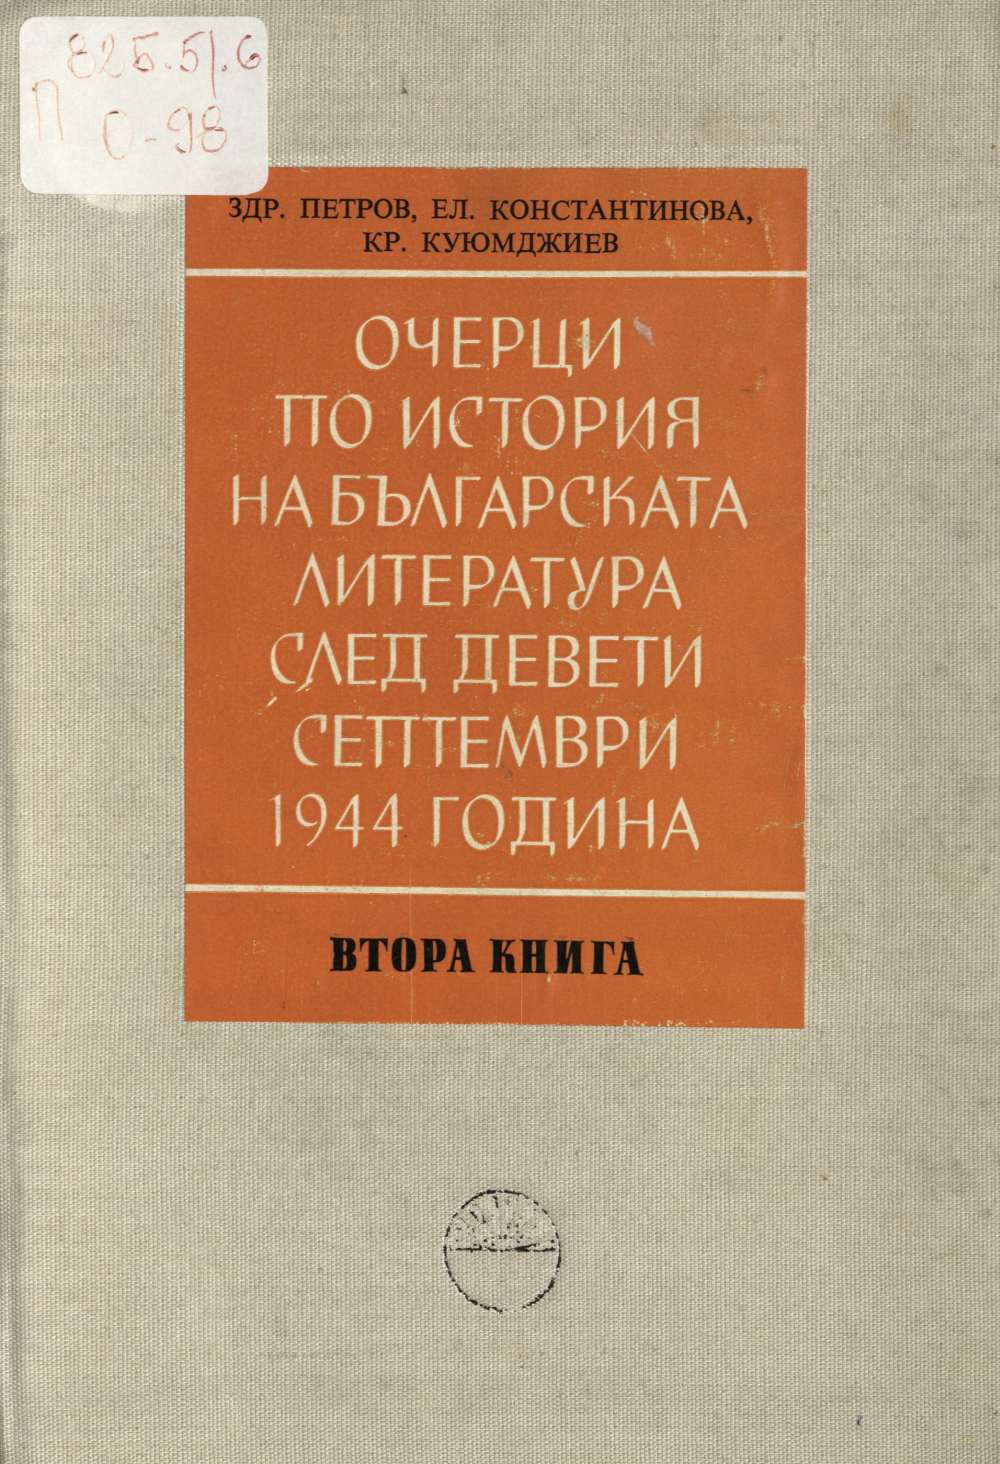 Очерци по история на българската литература след Девети септември 1944 година. Книга втора